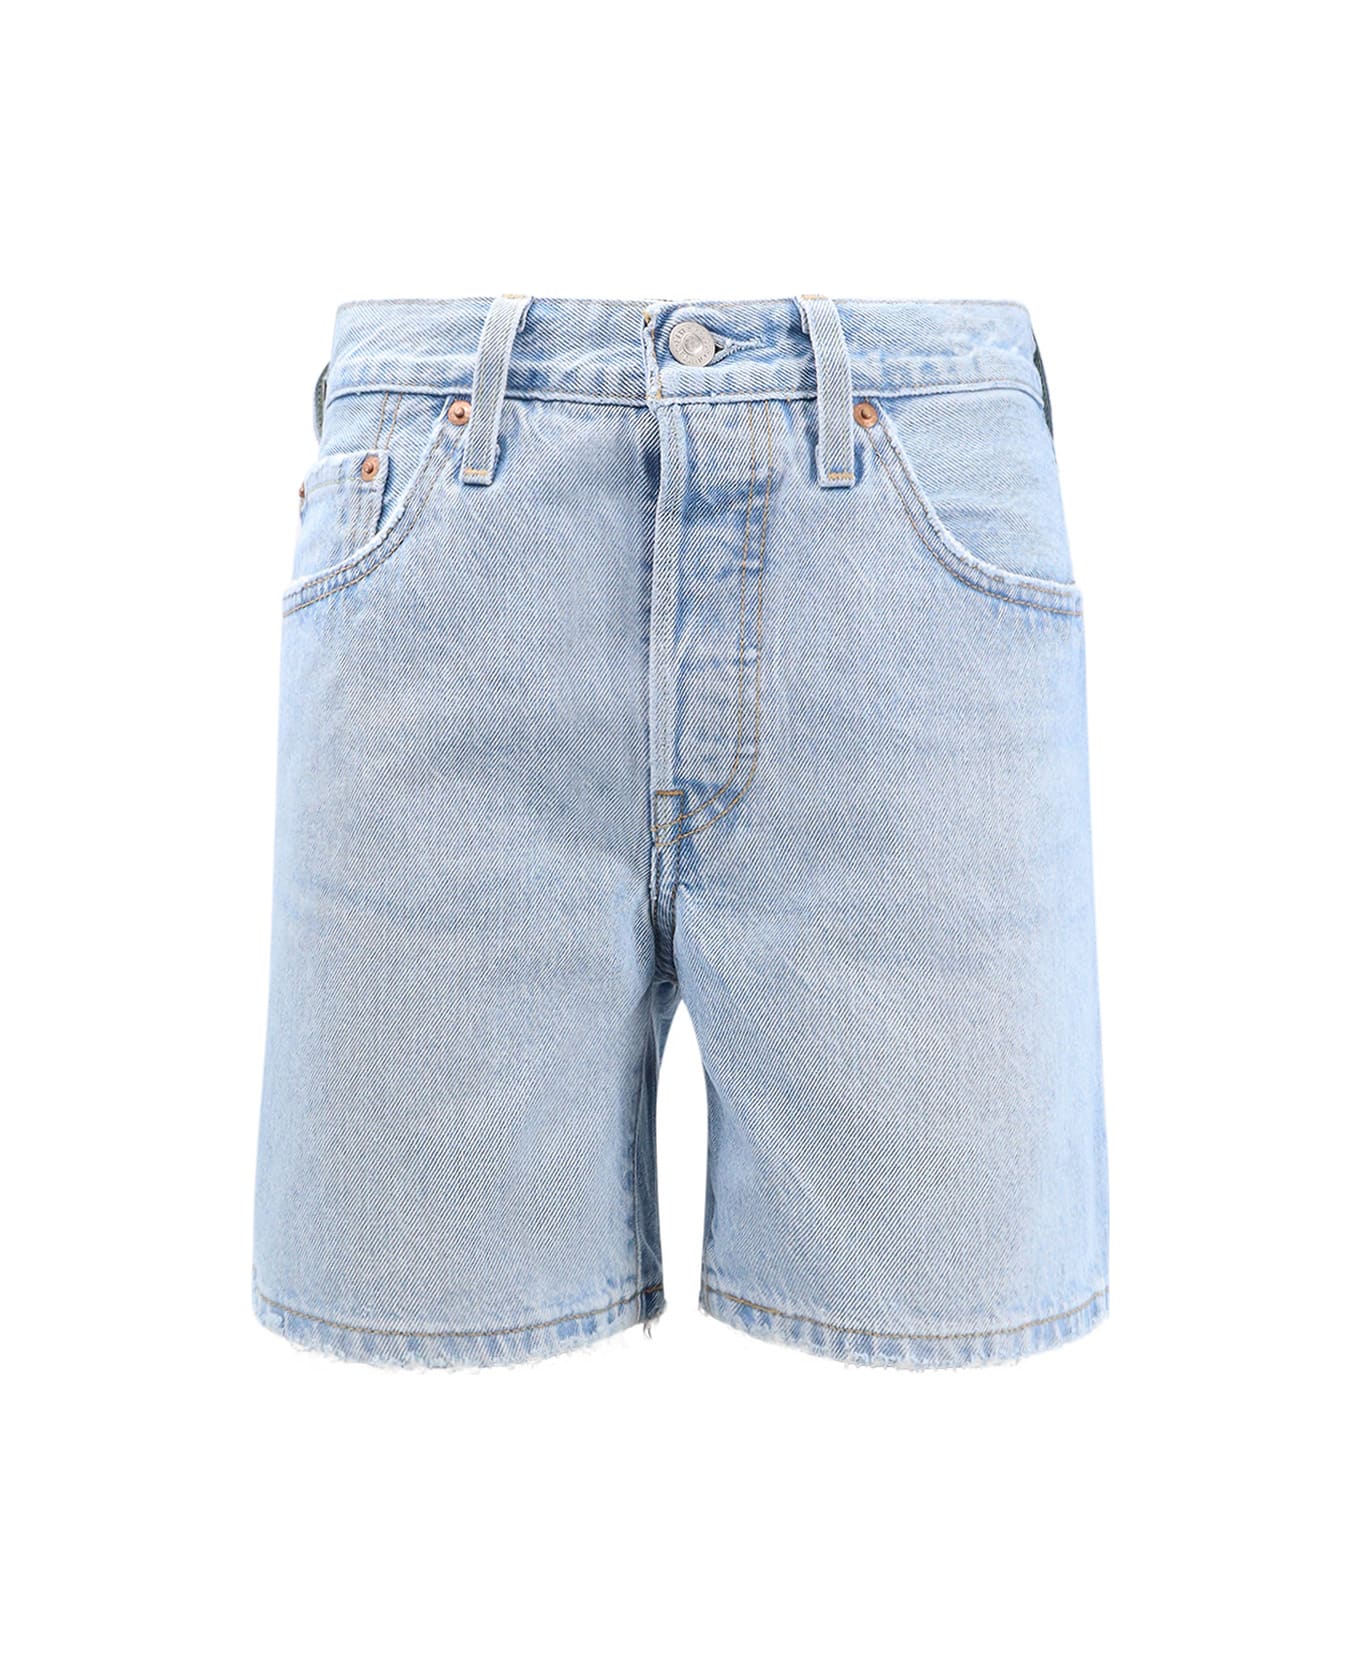 Levi's Shorts - Clear Blue ショートパンツ